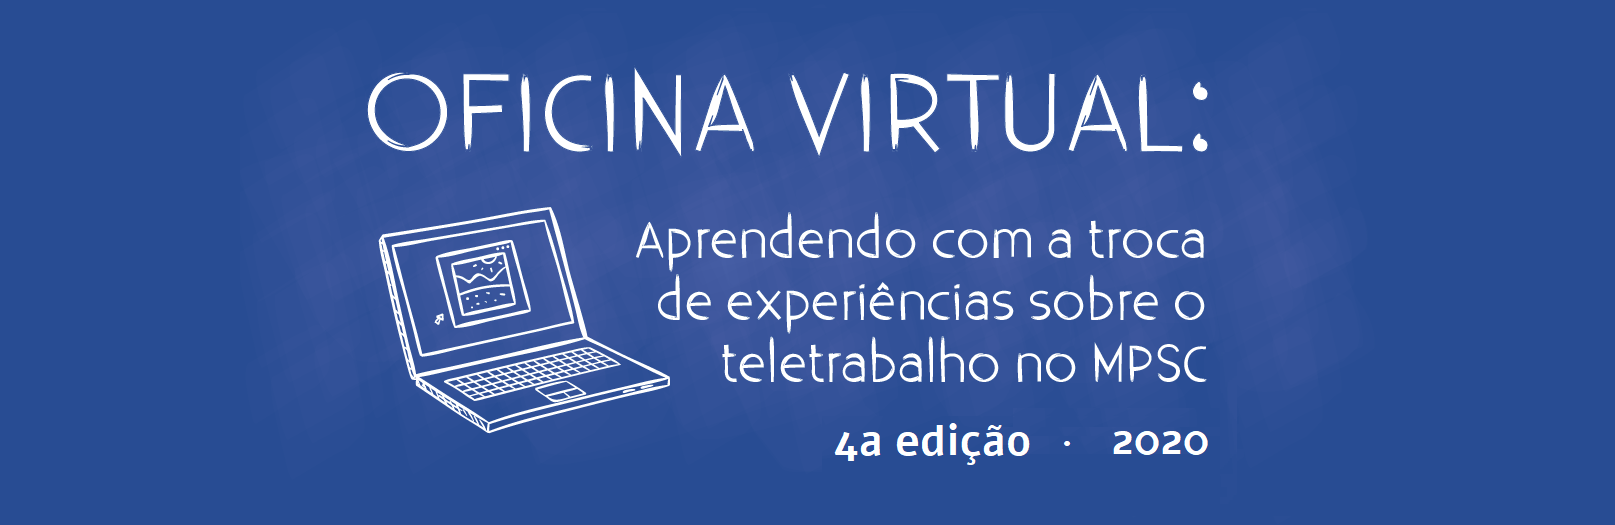 CURSO A DISTÂNCIA (INTERNO): Oficina Virtual "Aprendendo com a troca de experiências sobre o teletrabalho no MPSC" 4ª Edição - 2020